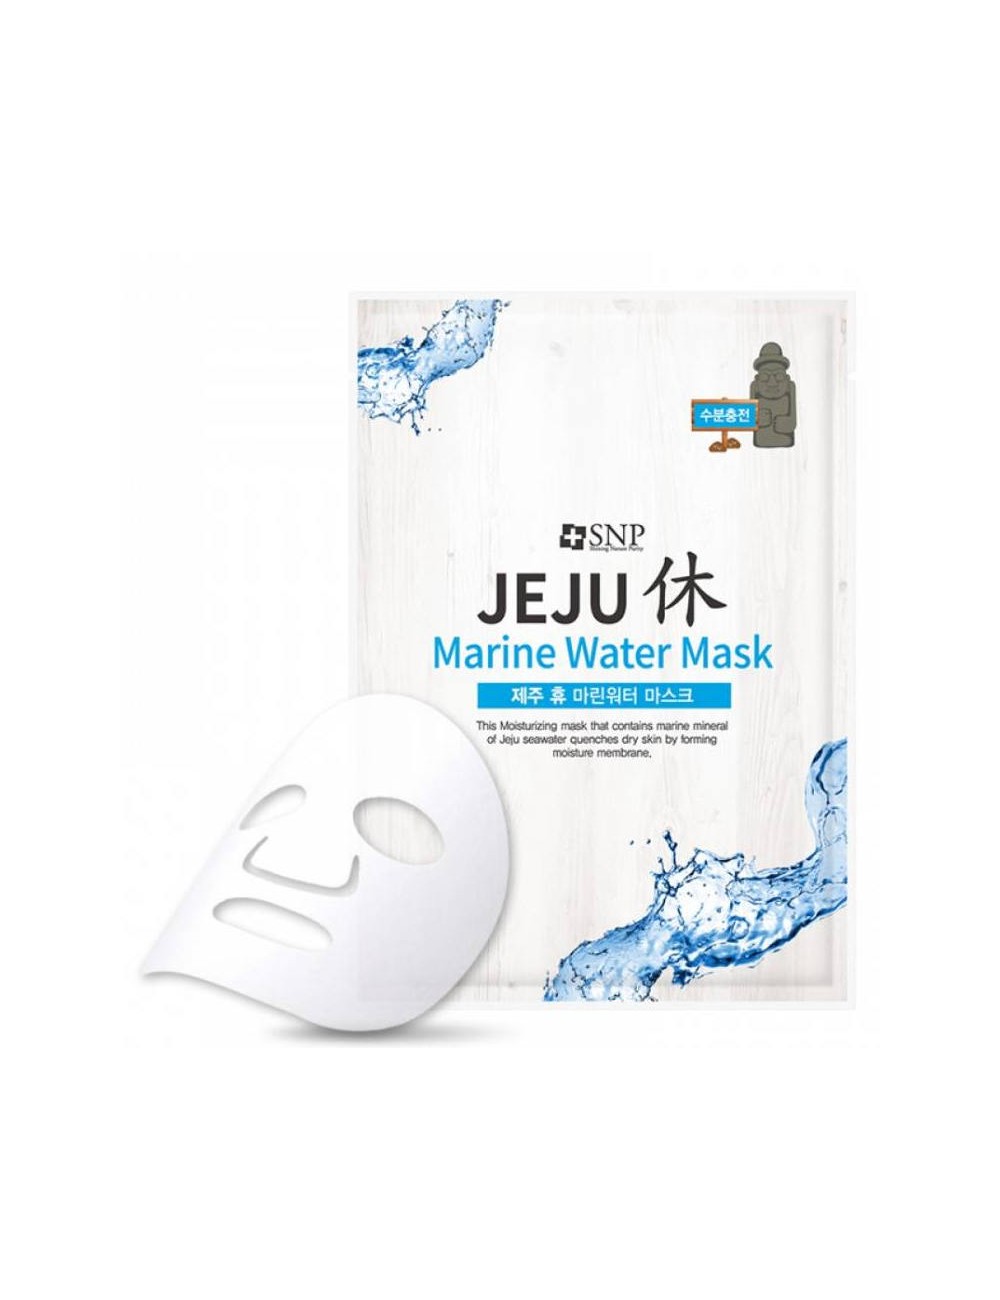 Mascarillas Coreanas de Hoja al mejor precio: SNP Jeju Rest Marine Water Mask Mascarilla Hidratante de SNP en Skin Thinks - Piel Seca